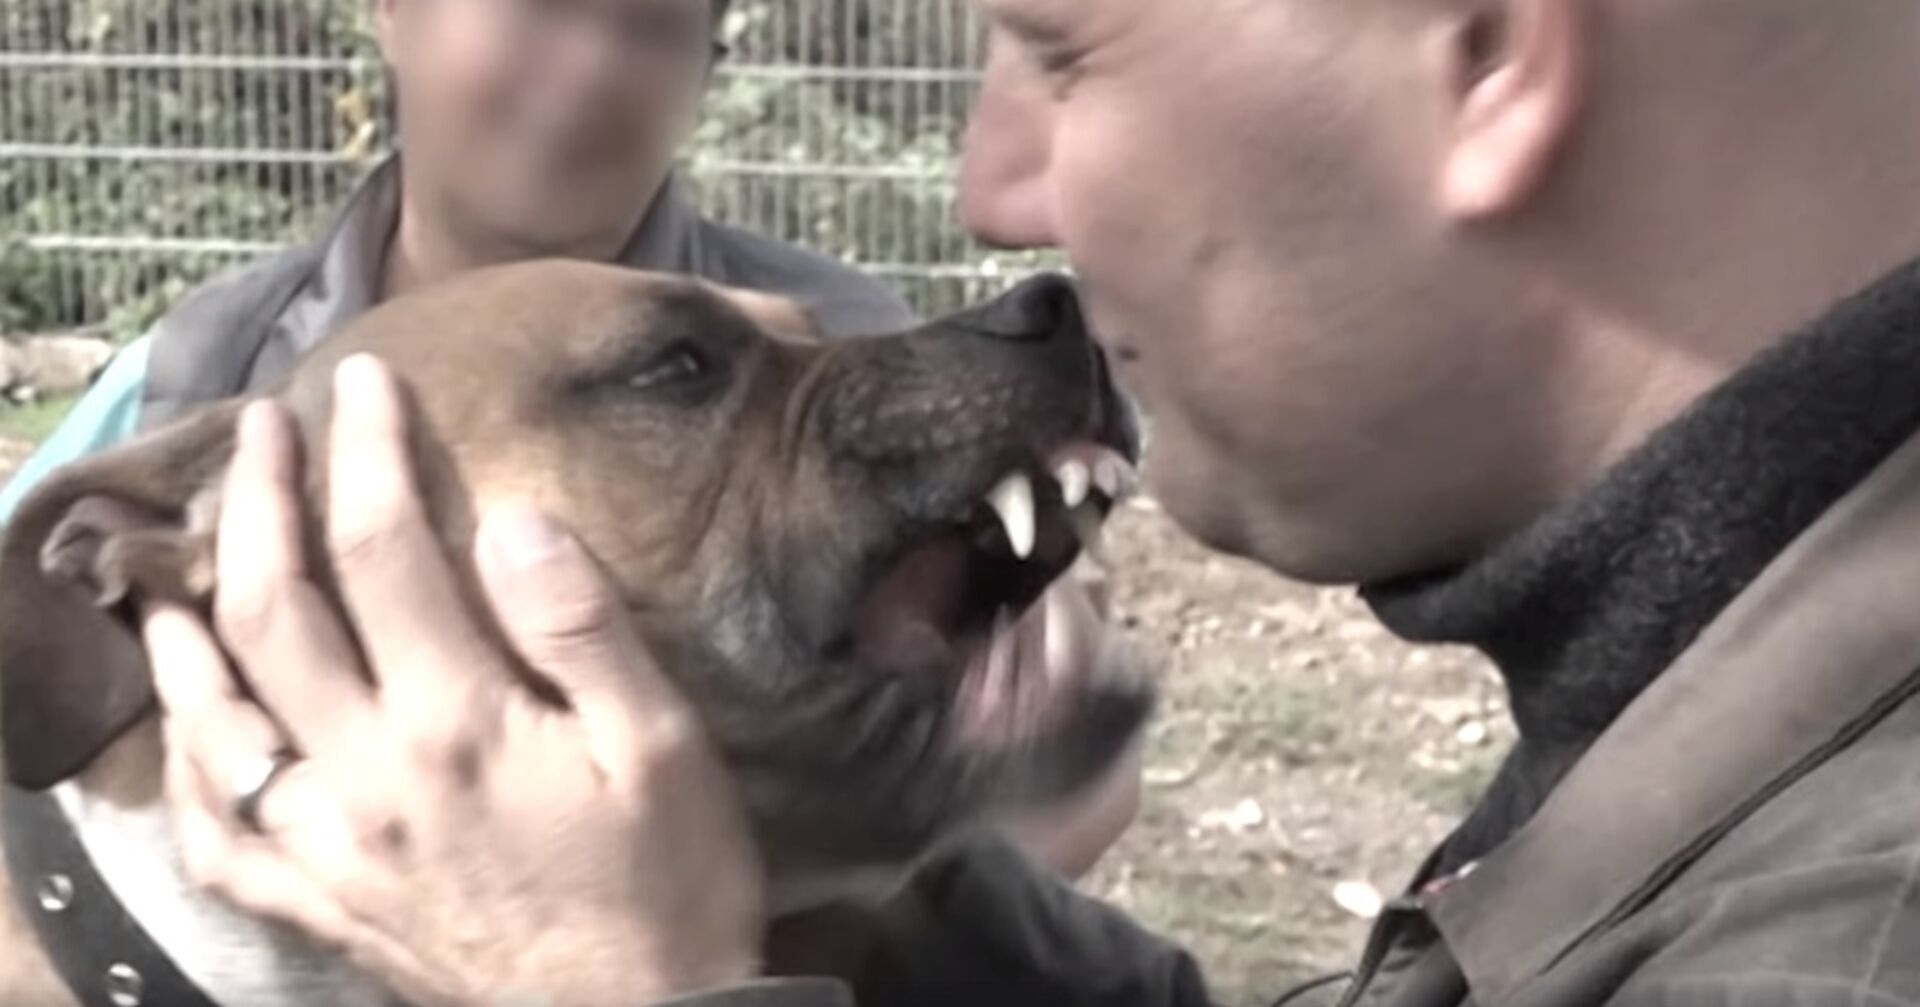 Schockmoment: Oli P. im Fernsehen von Kampfhund angefallen